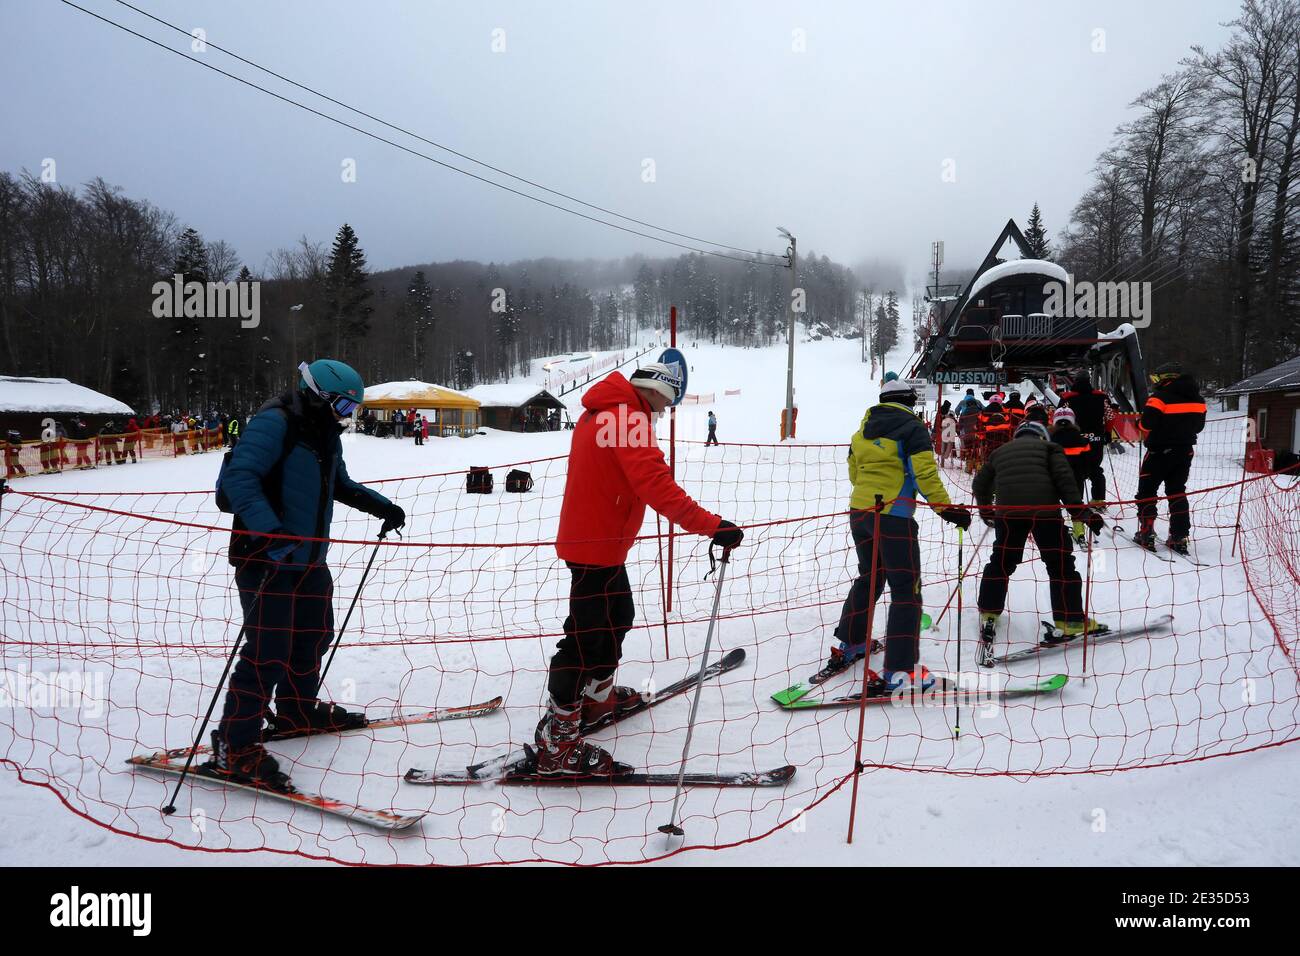 (210117) -- RIJEKA, Jan. 17, 2021 (Xinhua) -- Skiers wait in a queue at Platak ski resort near Rijeka, Croatia, Jan. 16, 2021. (Goran Kovacic/Pixsell via Xinhua) Stock Photo